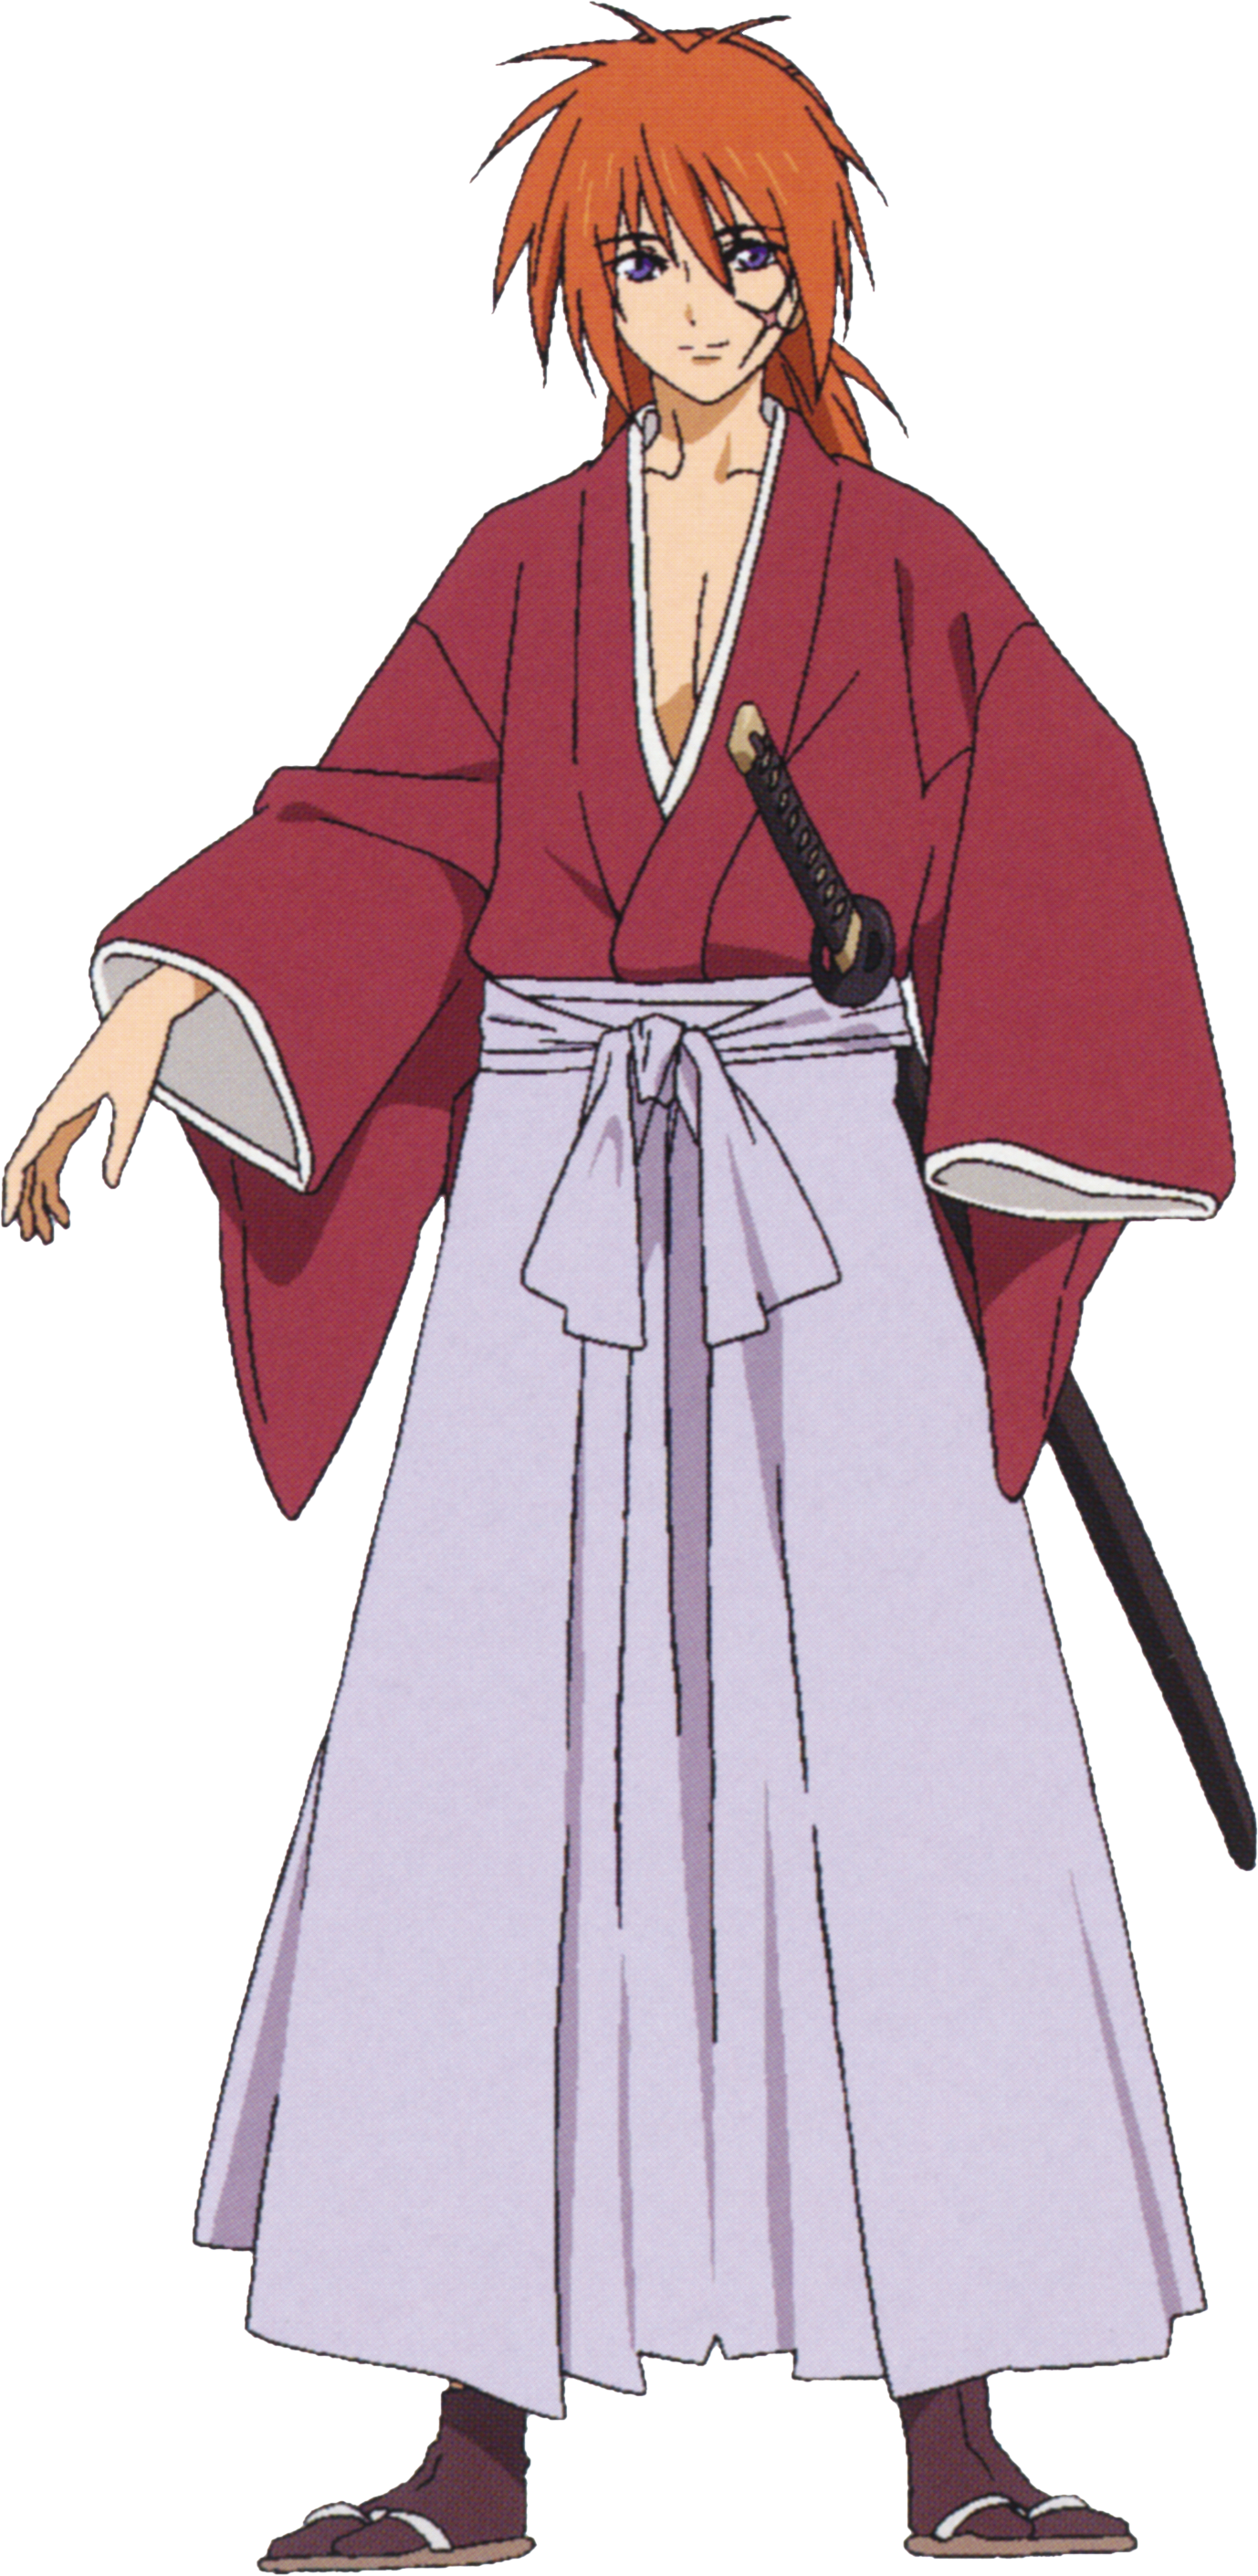 Rurouni Kenshin: The Final, Netflix Wiki